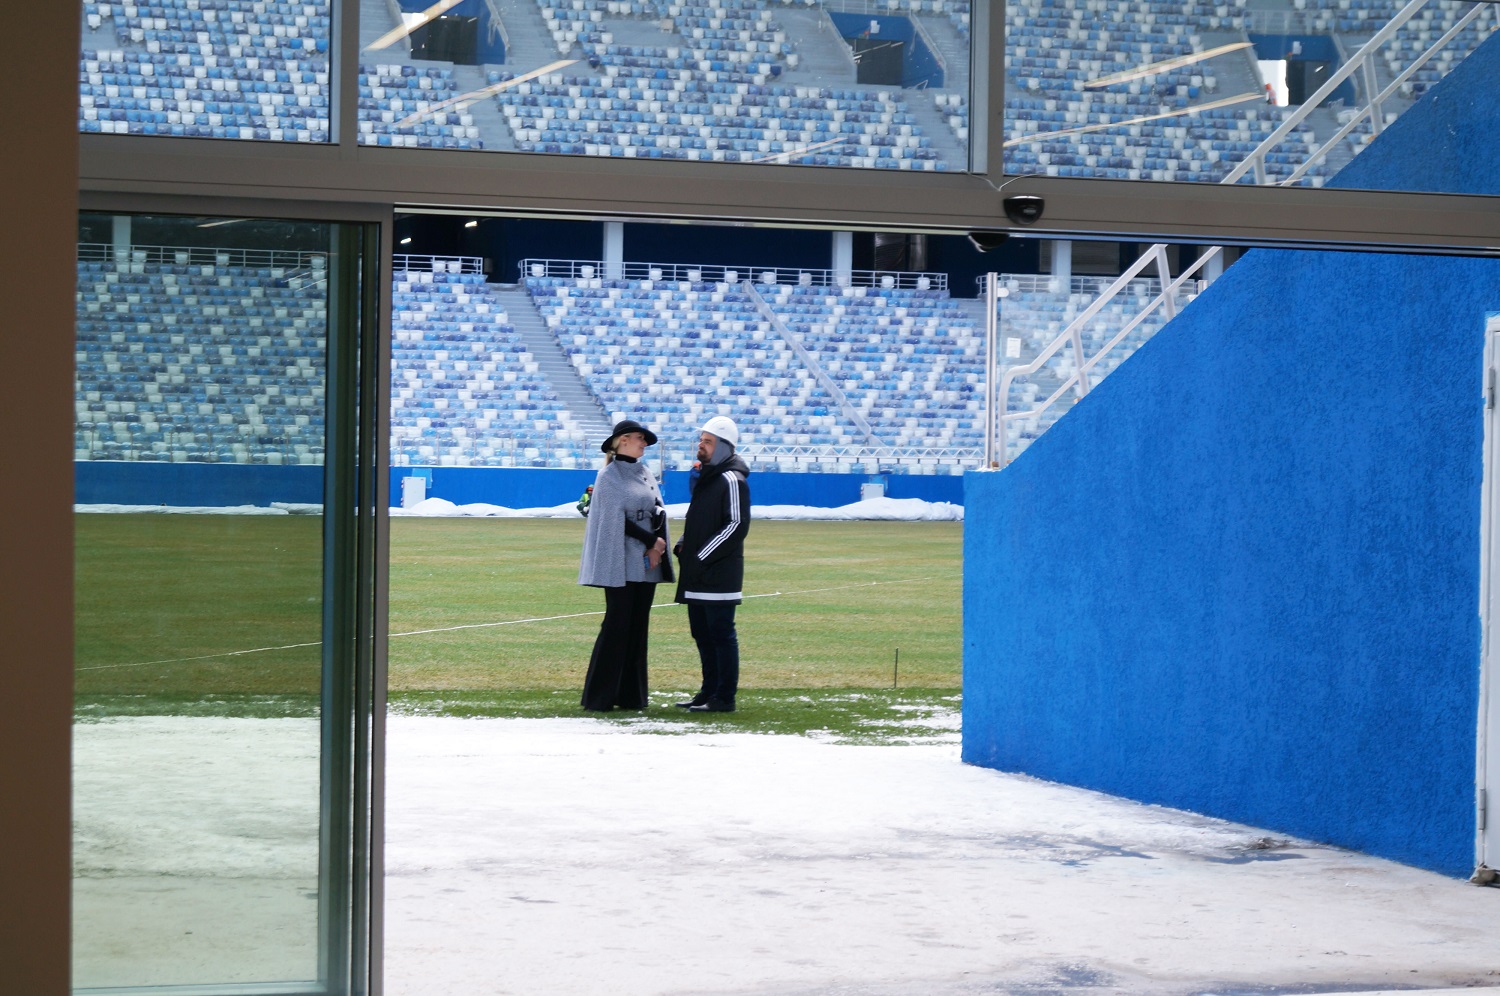 Представители FIFA побывали в Нижнем Новгороде с финальной проверкой нового стадиона (ФОТО) - фото 4